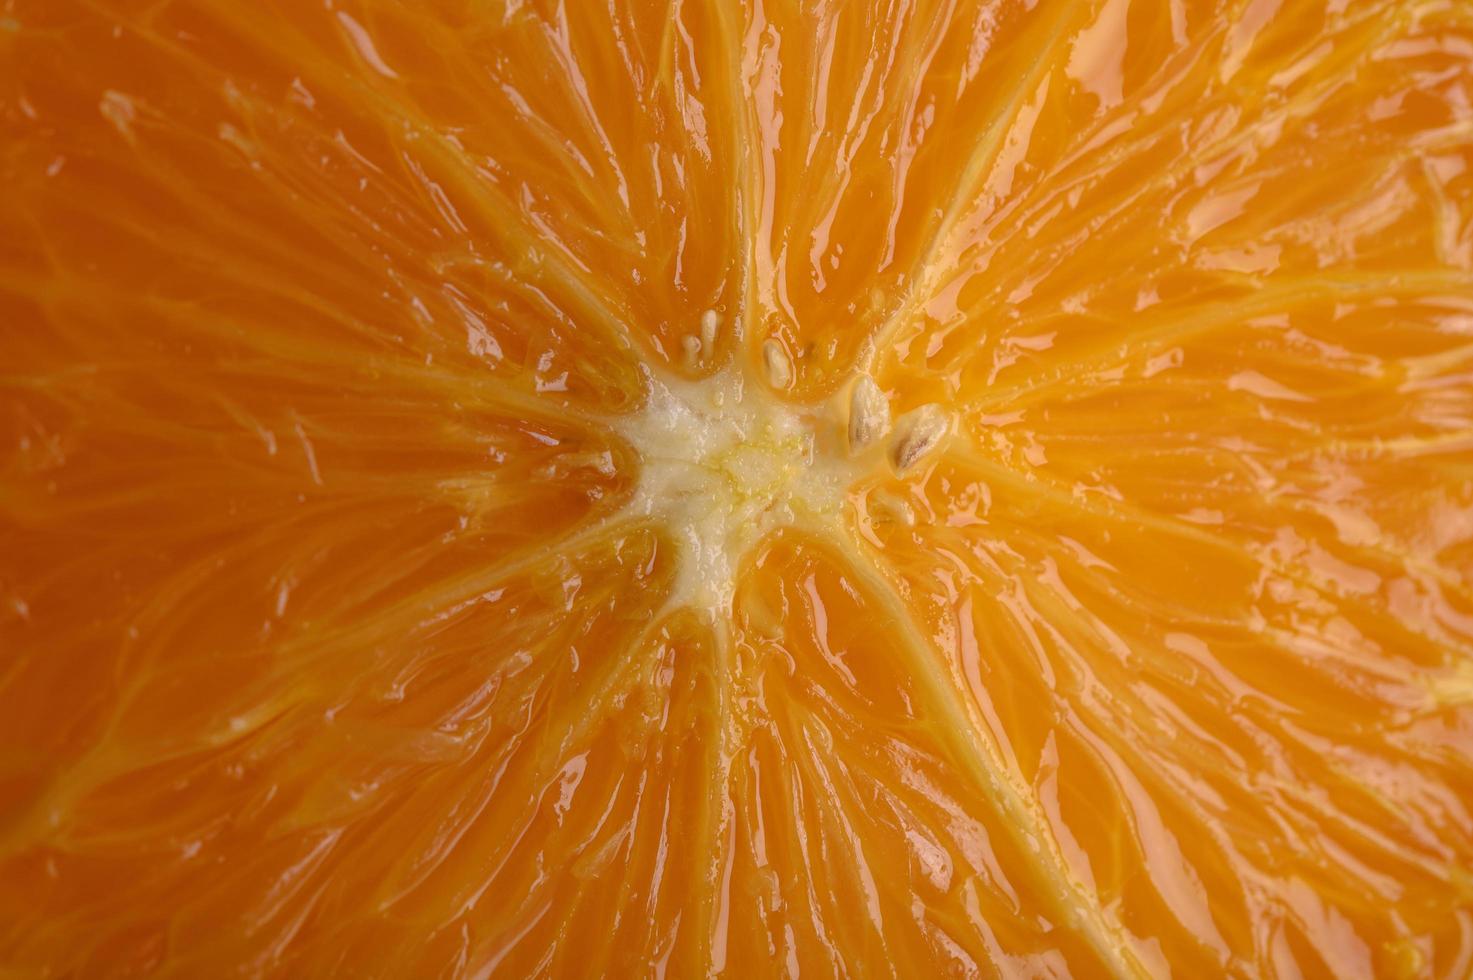 immagine macro di arancia matura con piccole profondità di campo foto